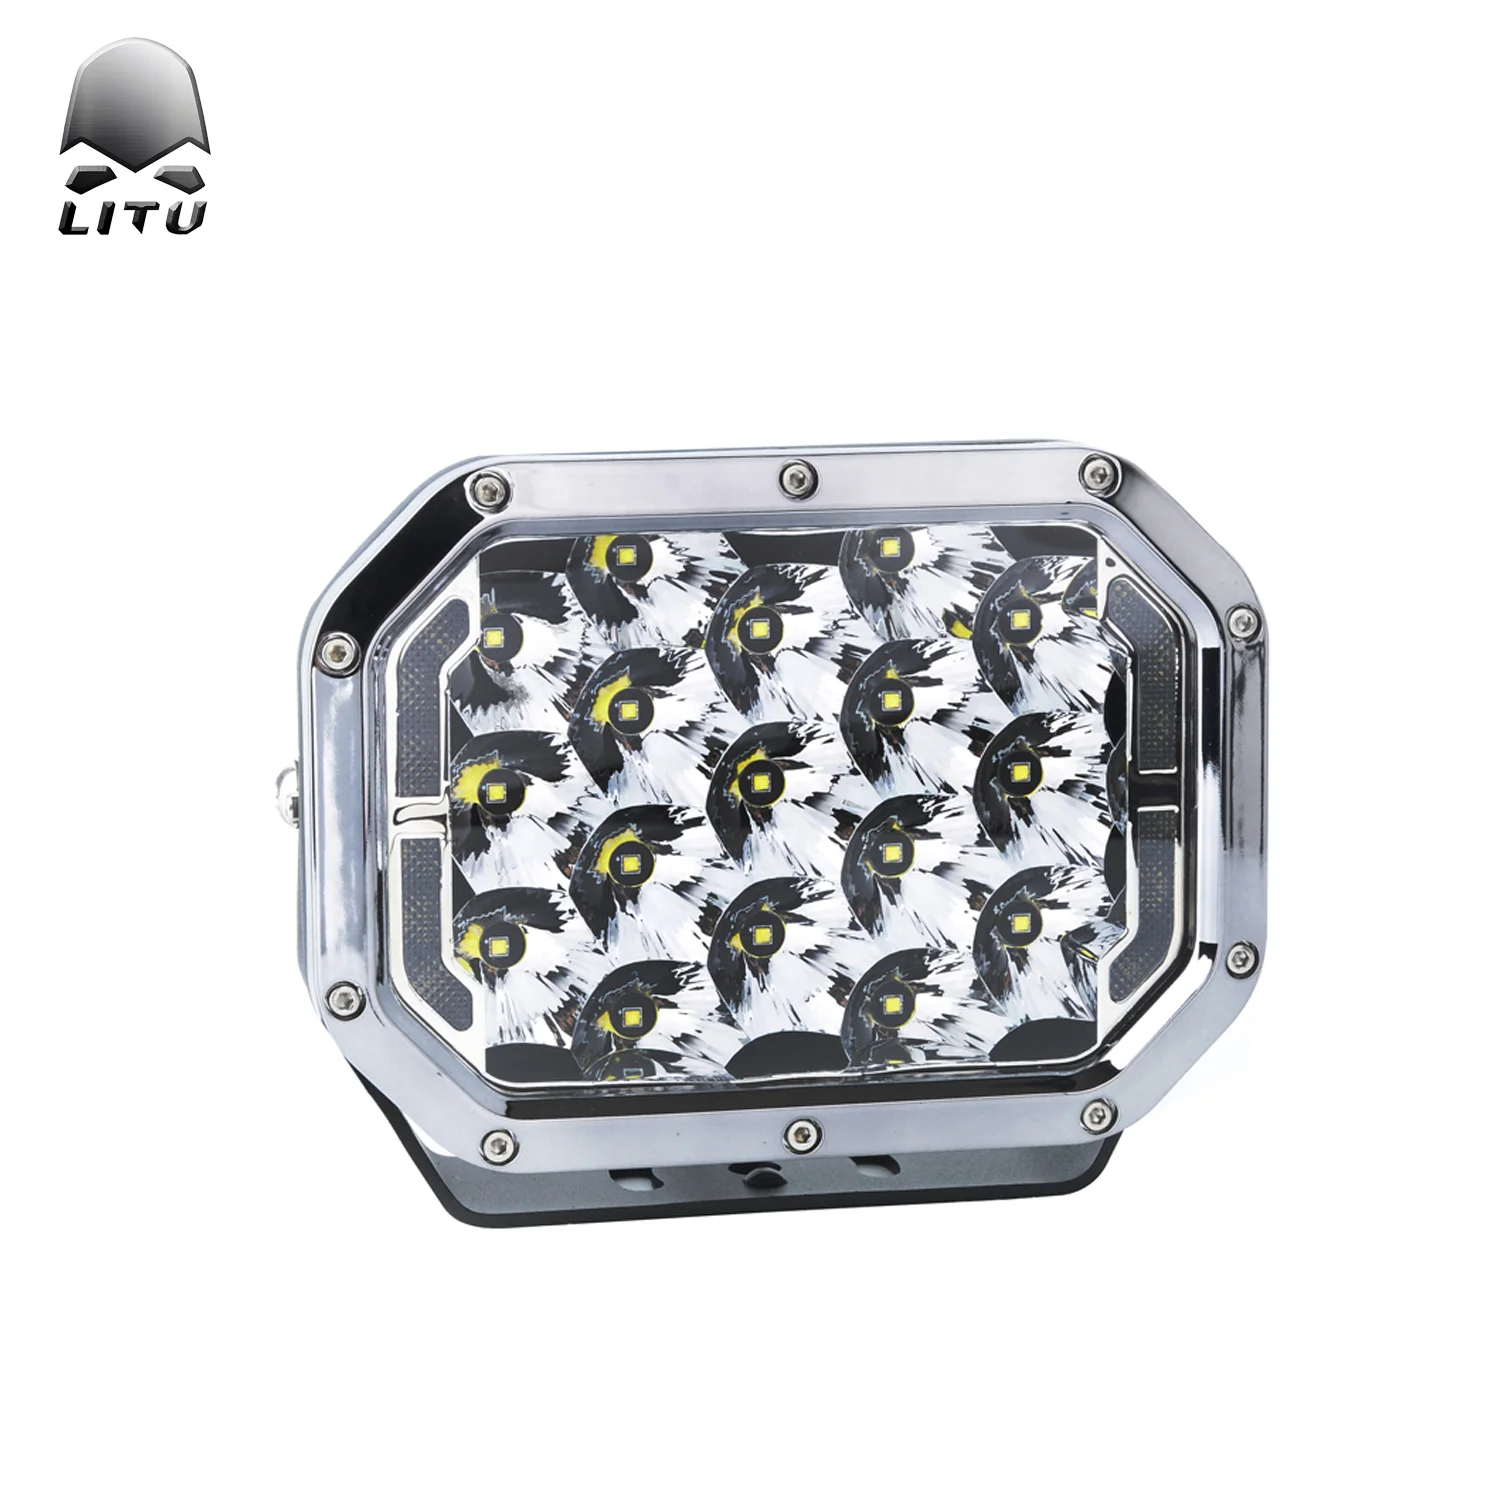 저렴한 Litu Led 작업 빛 고품질 170w 높은 전원 충전식 Led 홍수 빛 7 인치 오프로드 트럭 자동 램프 Atv